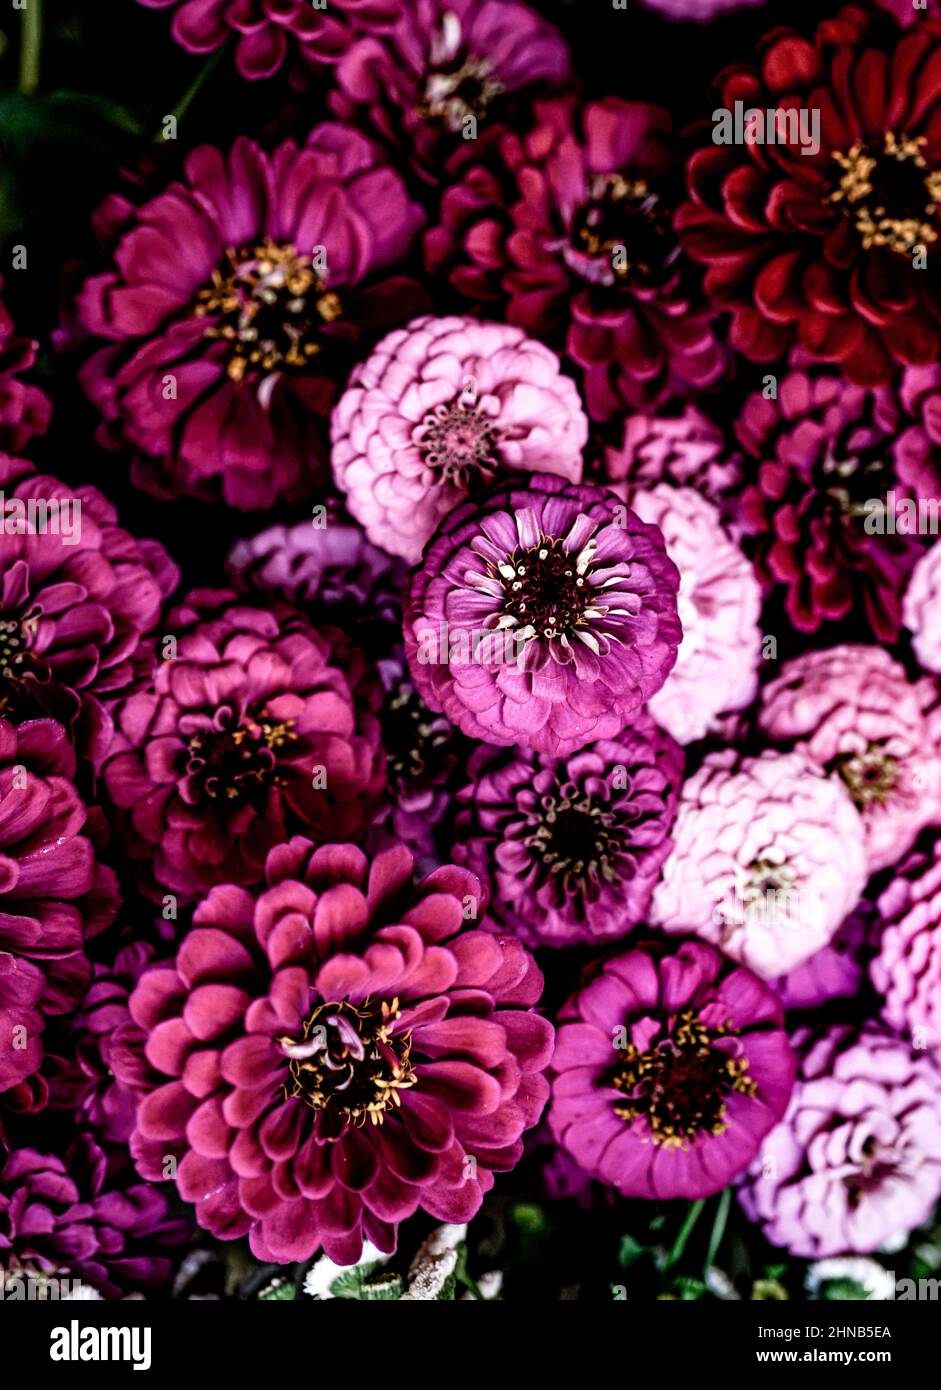 Profusione di zinnie rosa dai colori vivaci, fiori estivi che trasudano gioia e buona energia. Foto Stock